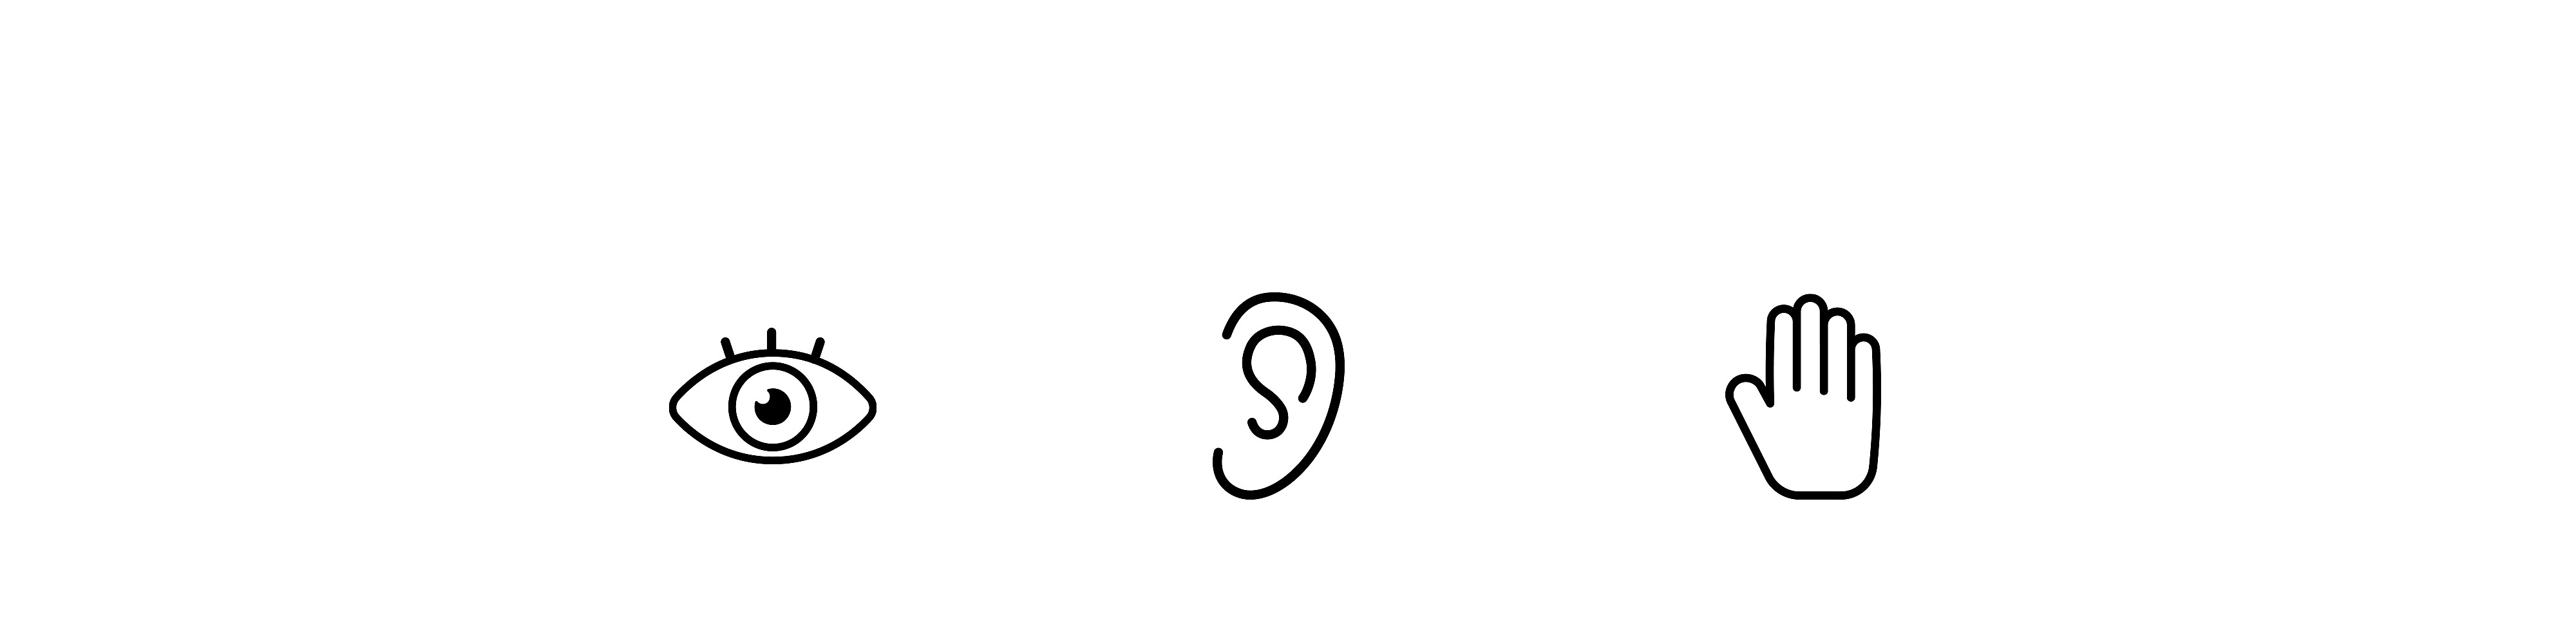 Iconos sencillos de un ojo, una oreja y una mano